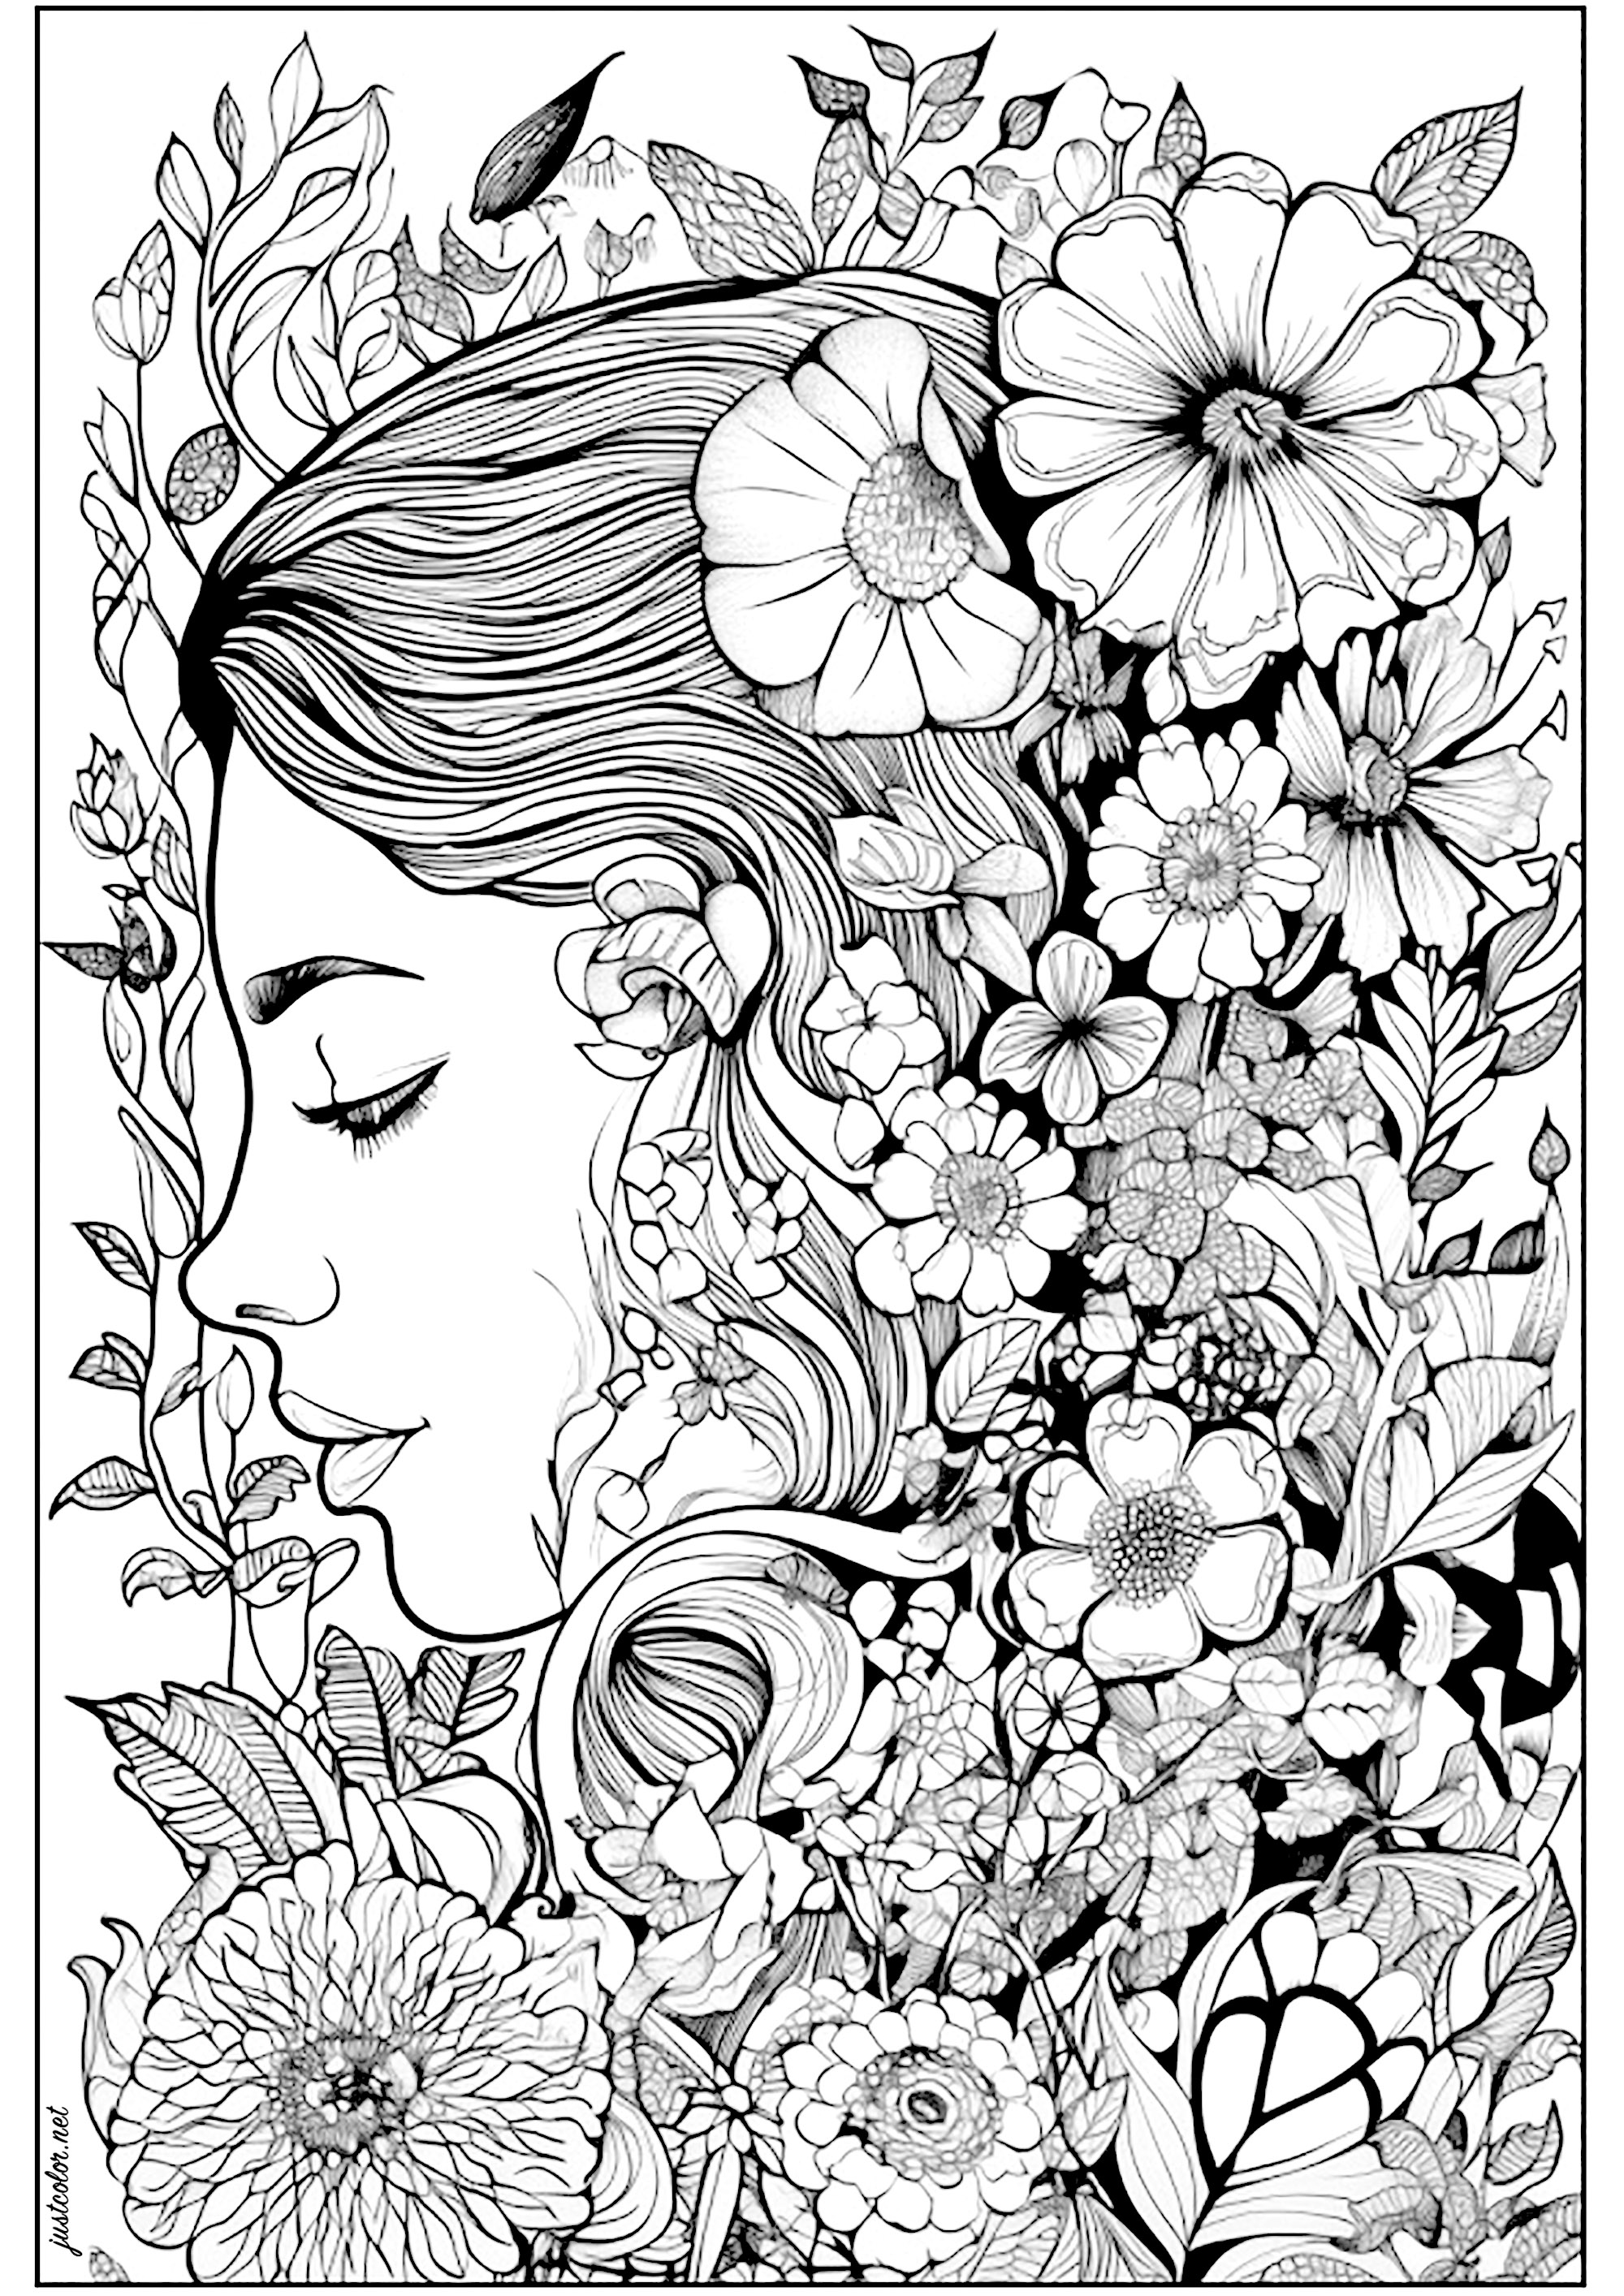 Gesicht einer nachdenklichen Frau, umgeben von Blumen. Frau umgeben von schönen und vielfältigen Blumen